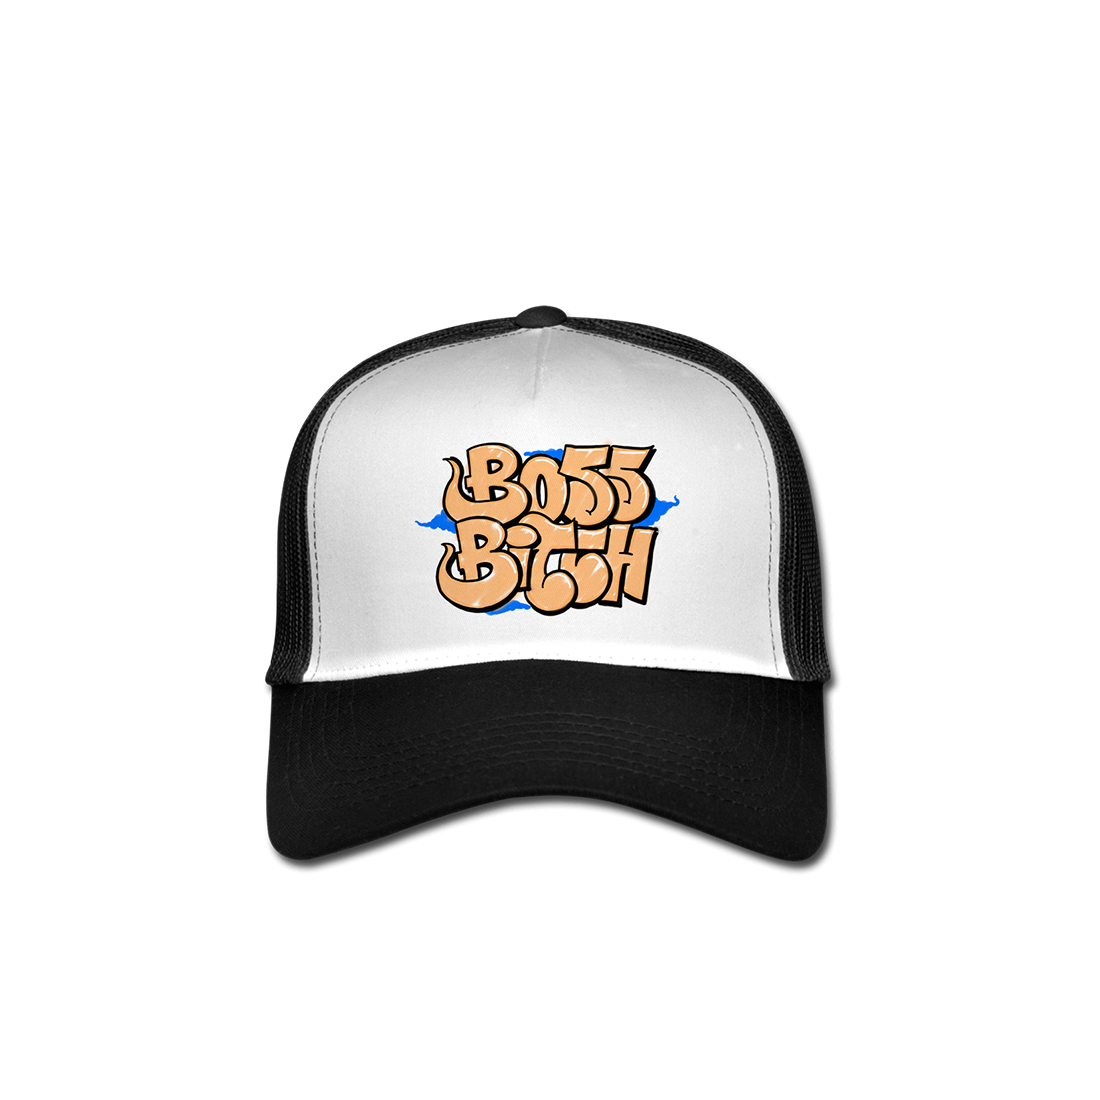 Boss Bitch Trucker Hat